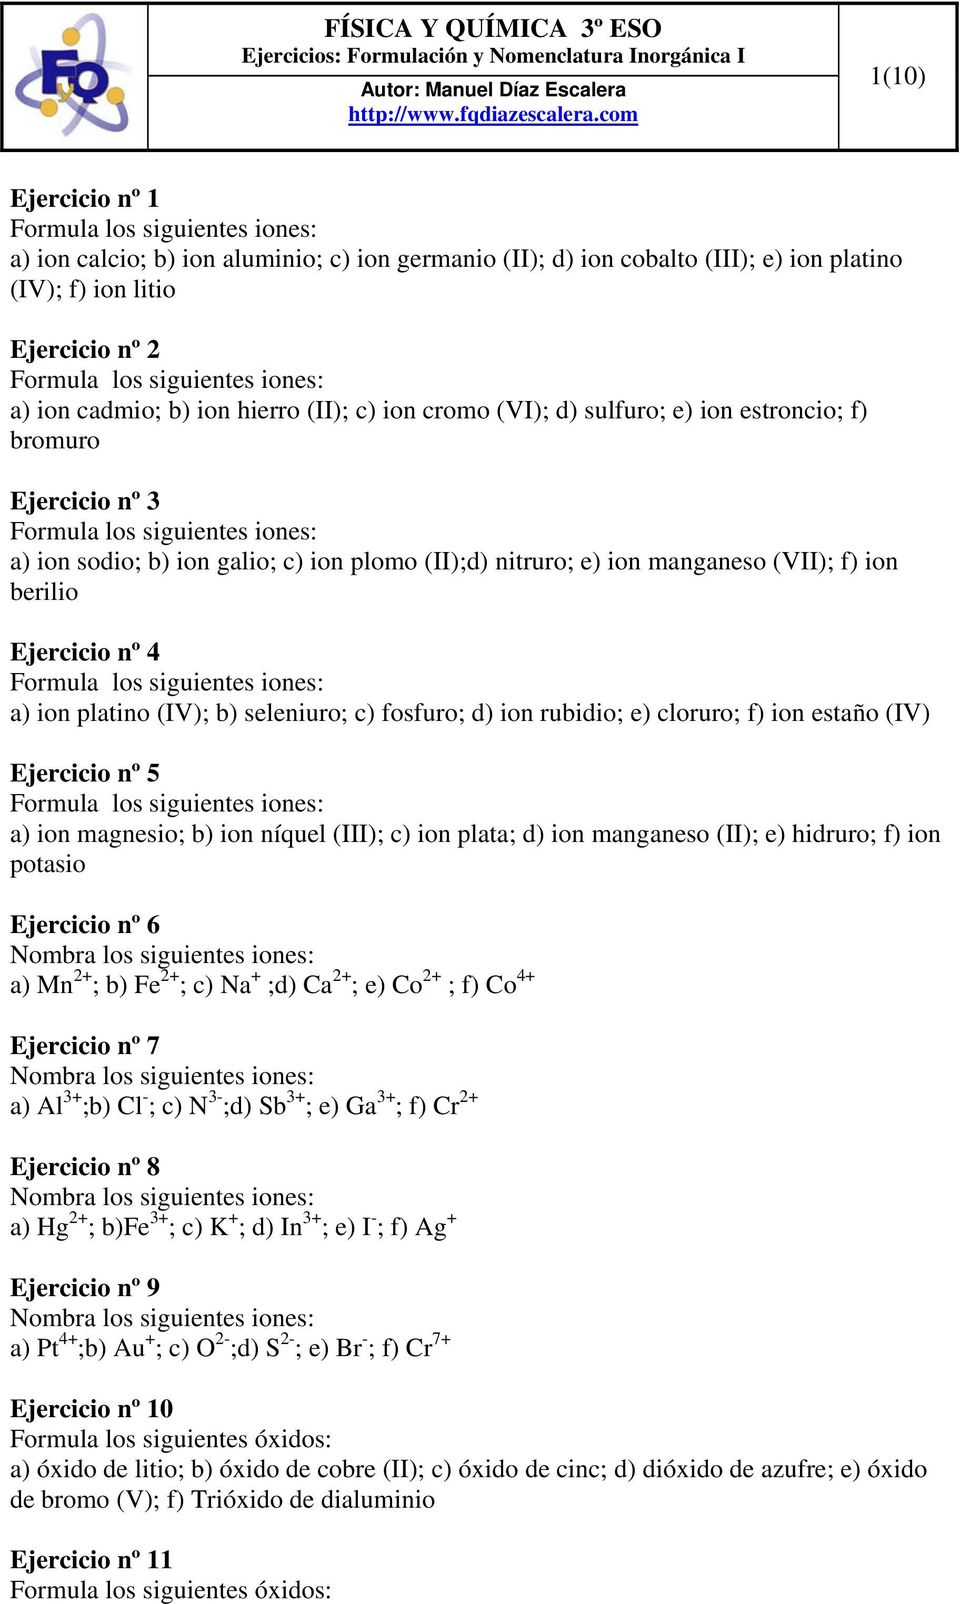 seleniuro; c) fosfuro; d) ion rubidio; e) cloruro; f) ion estaño (IV) Ejercicio nº 5 a) ion magnesio; b) ion níquel (III); c) ion plata; d) ion manganeso (II); e) hidruro; f) ion potasio Ejercicio nº